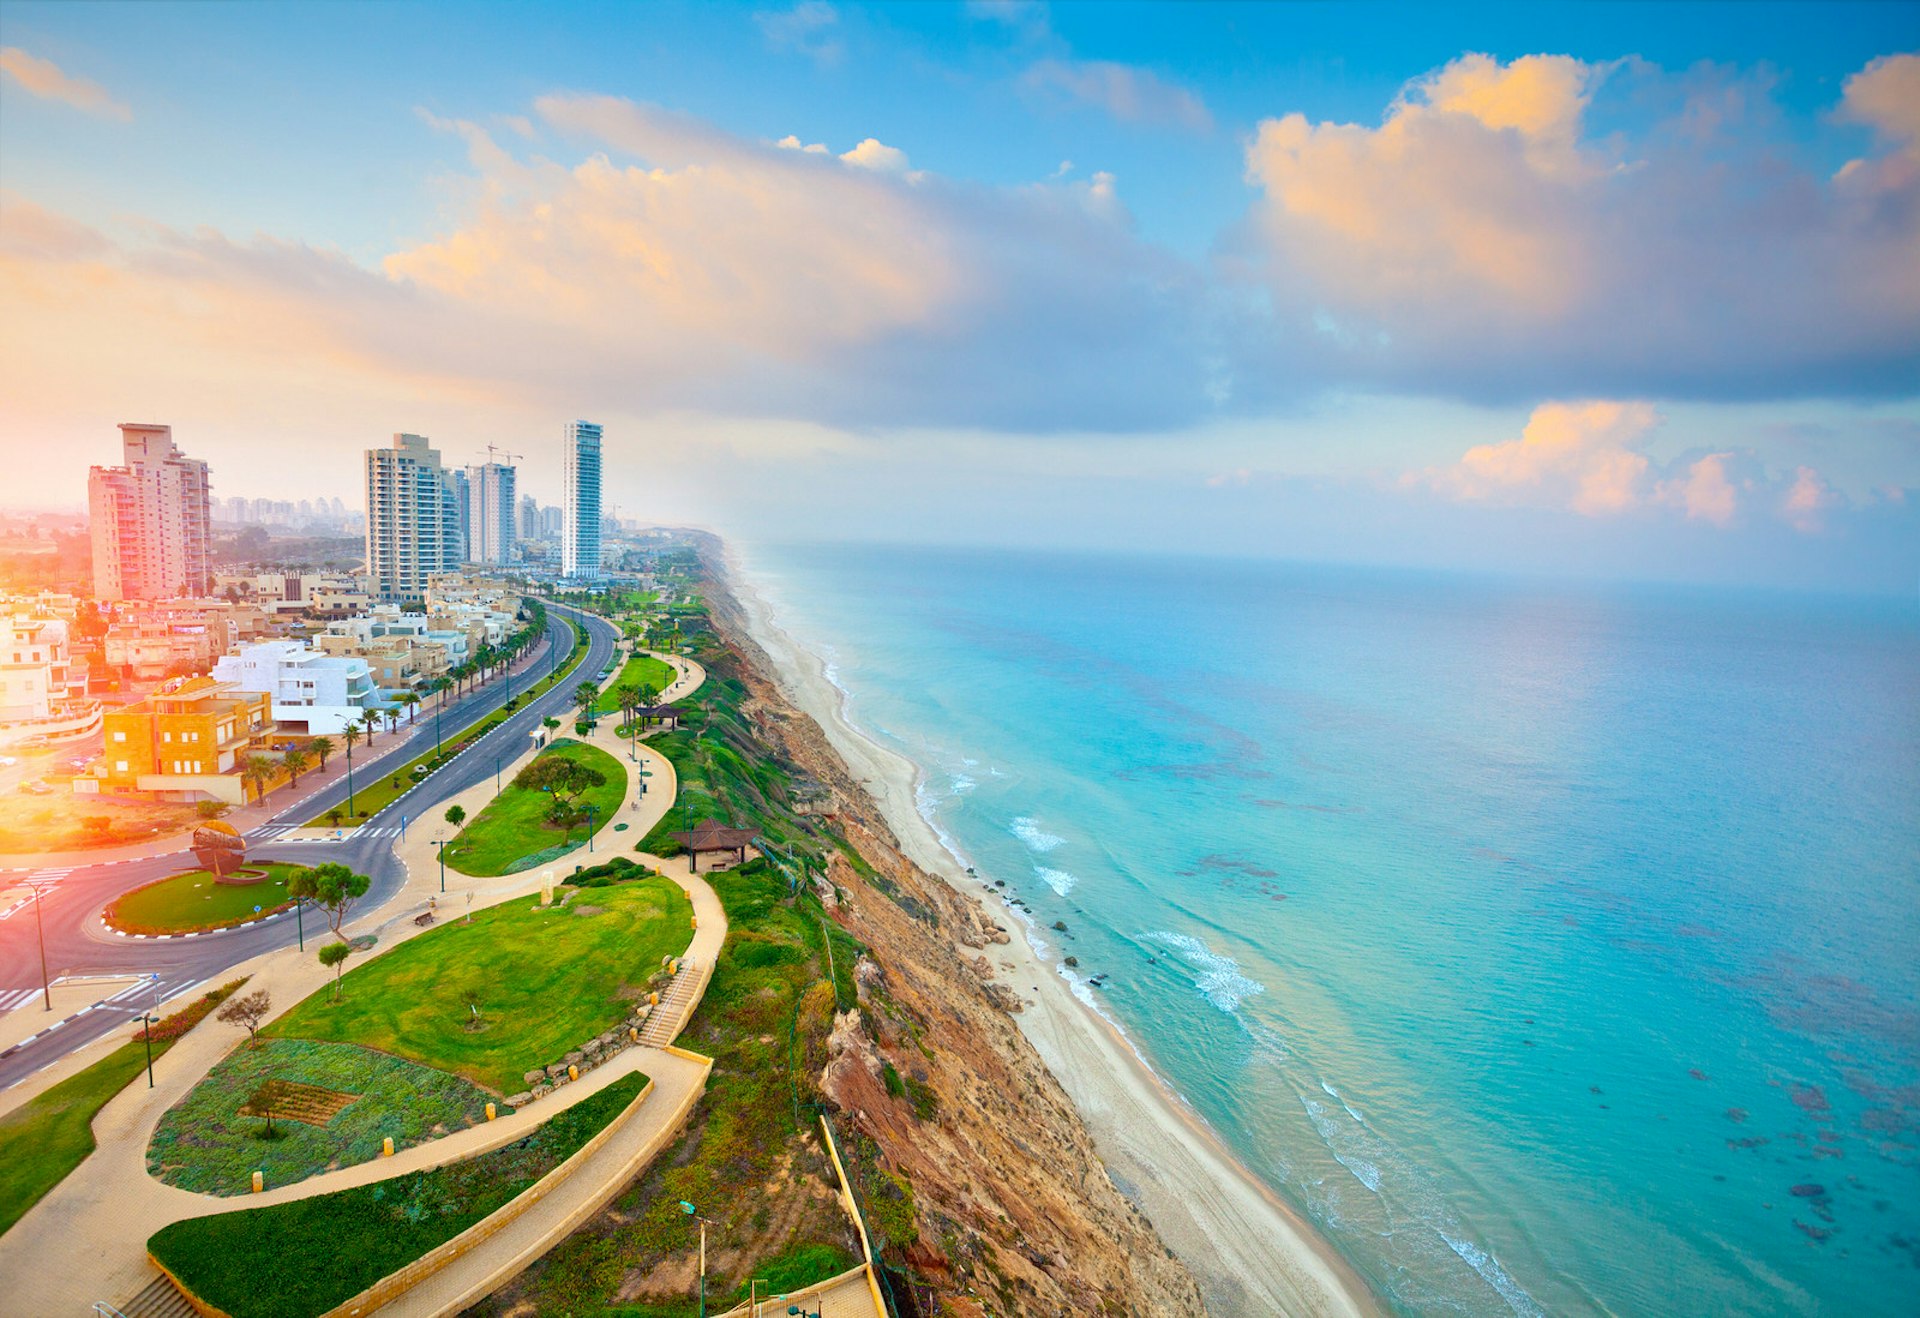 Panoramic view of Netanya, Israel. Image by vvvita / Shutterstock